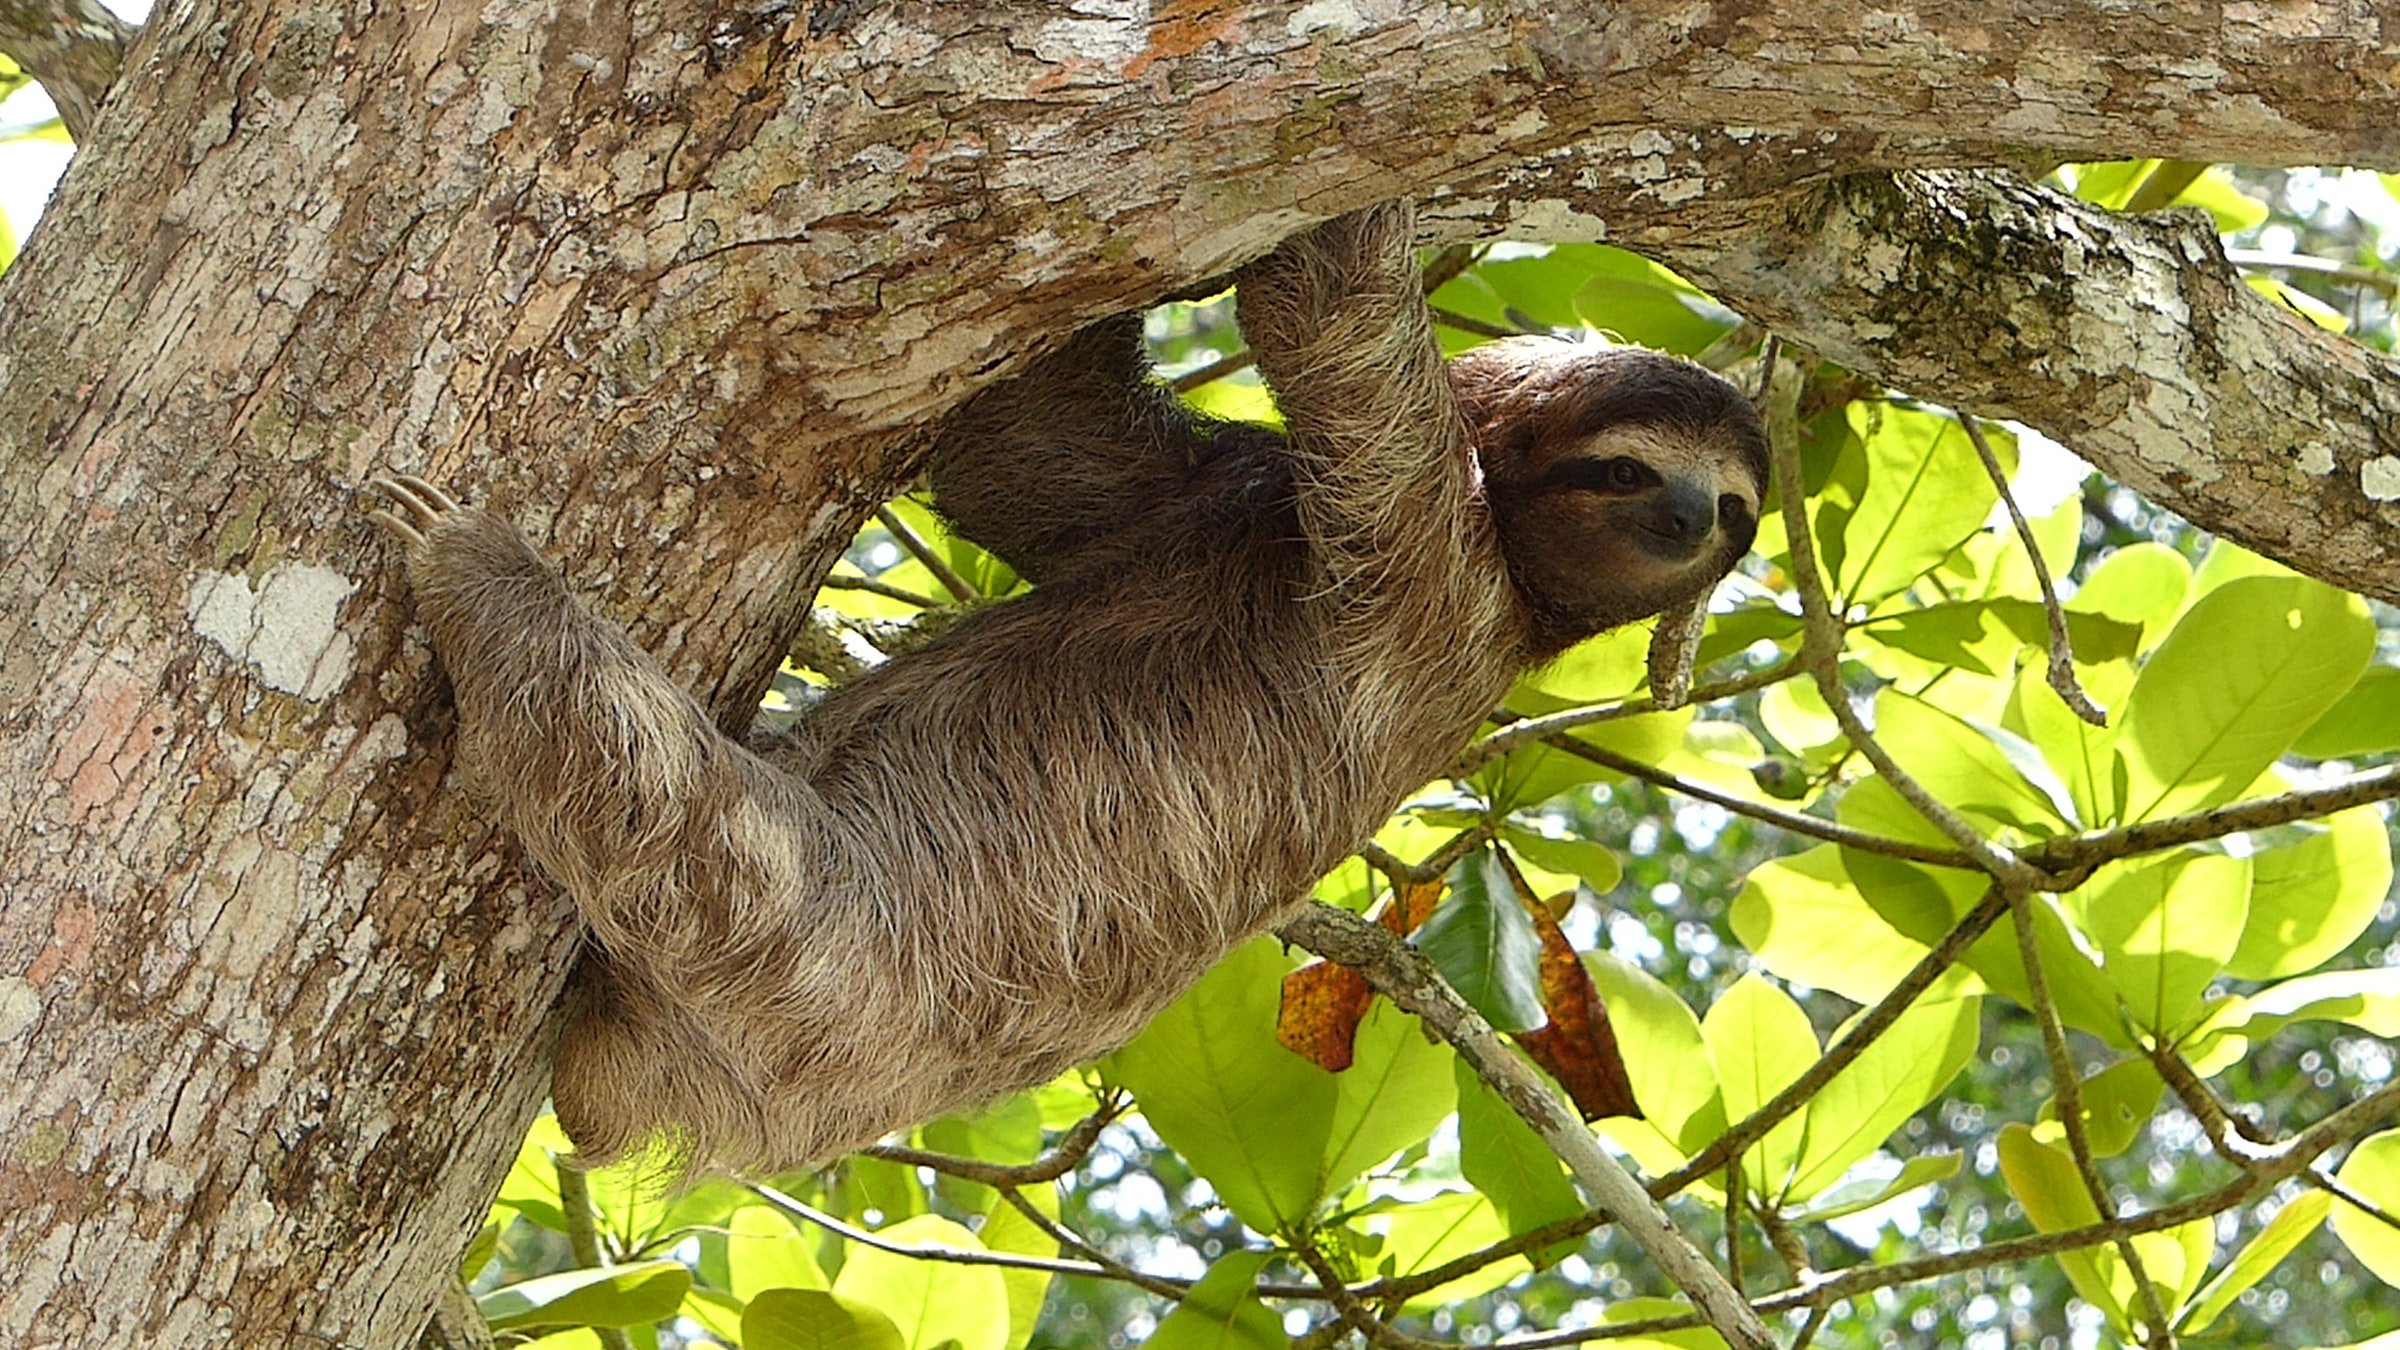 Sloth-Galapagos.jpeg